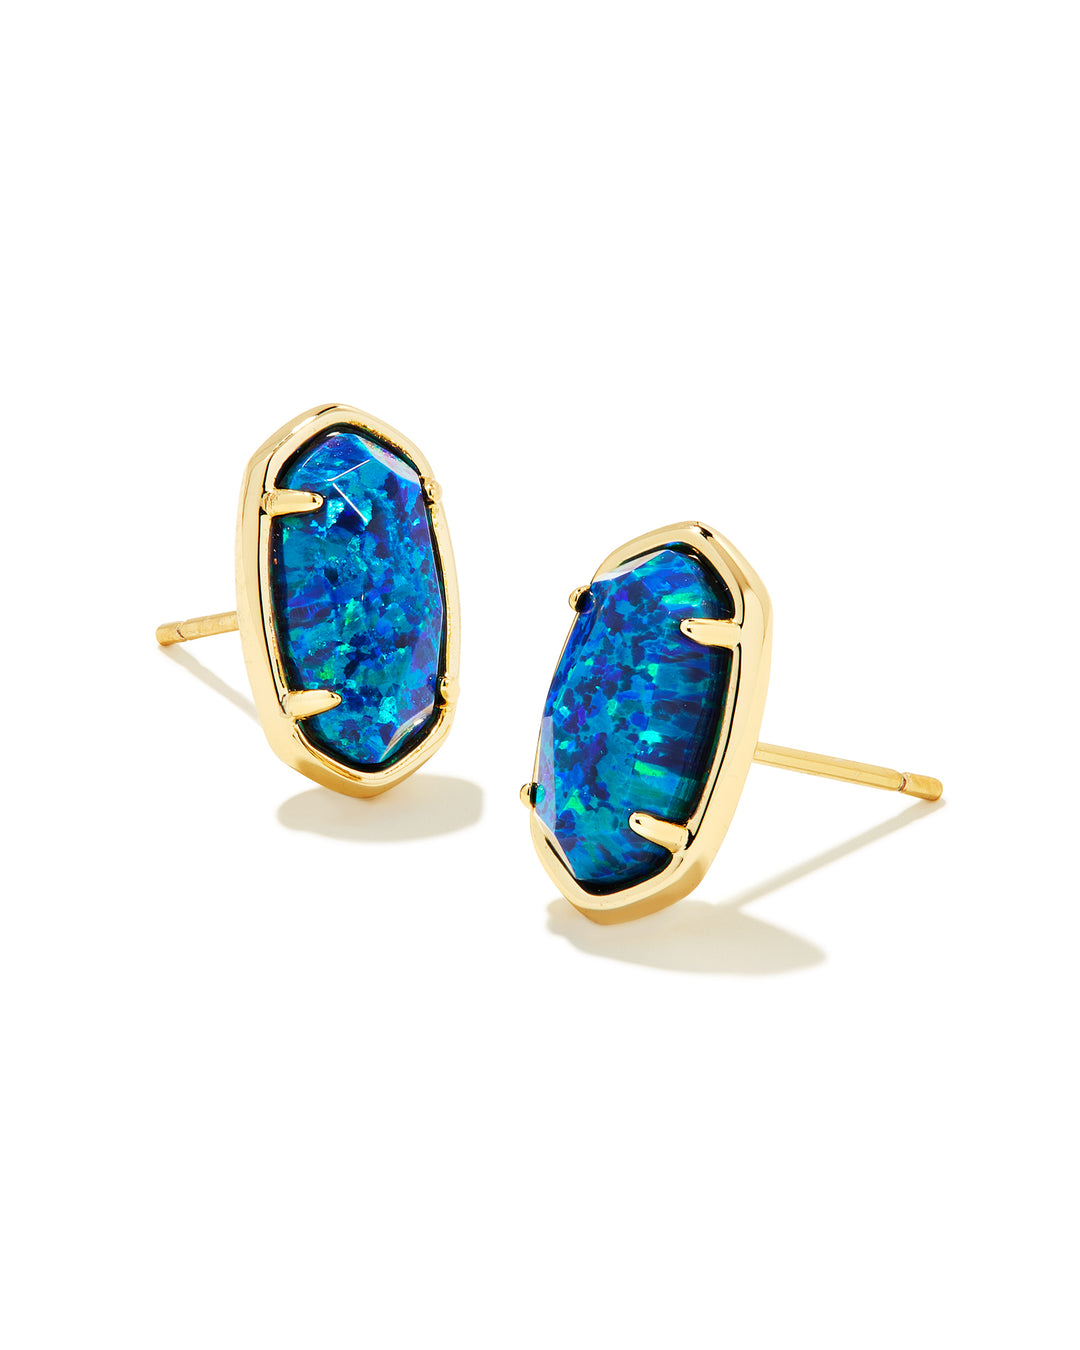 Kendra Scott-Grayson Gold Stone Stud Earrings in Cobalt Blue Kyocera Opal